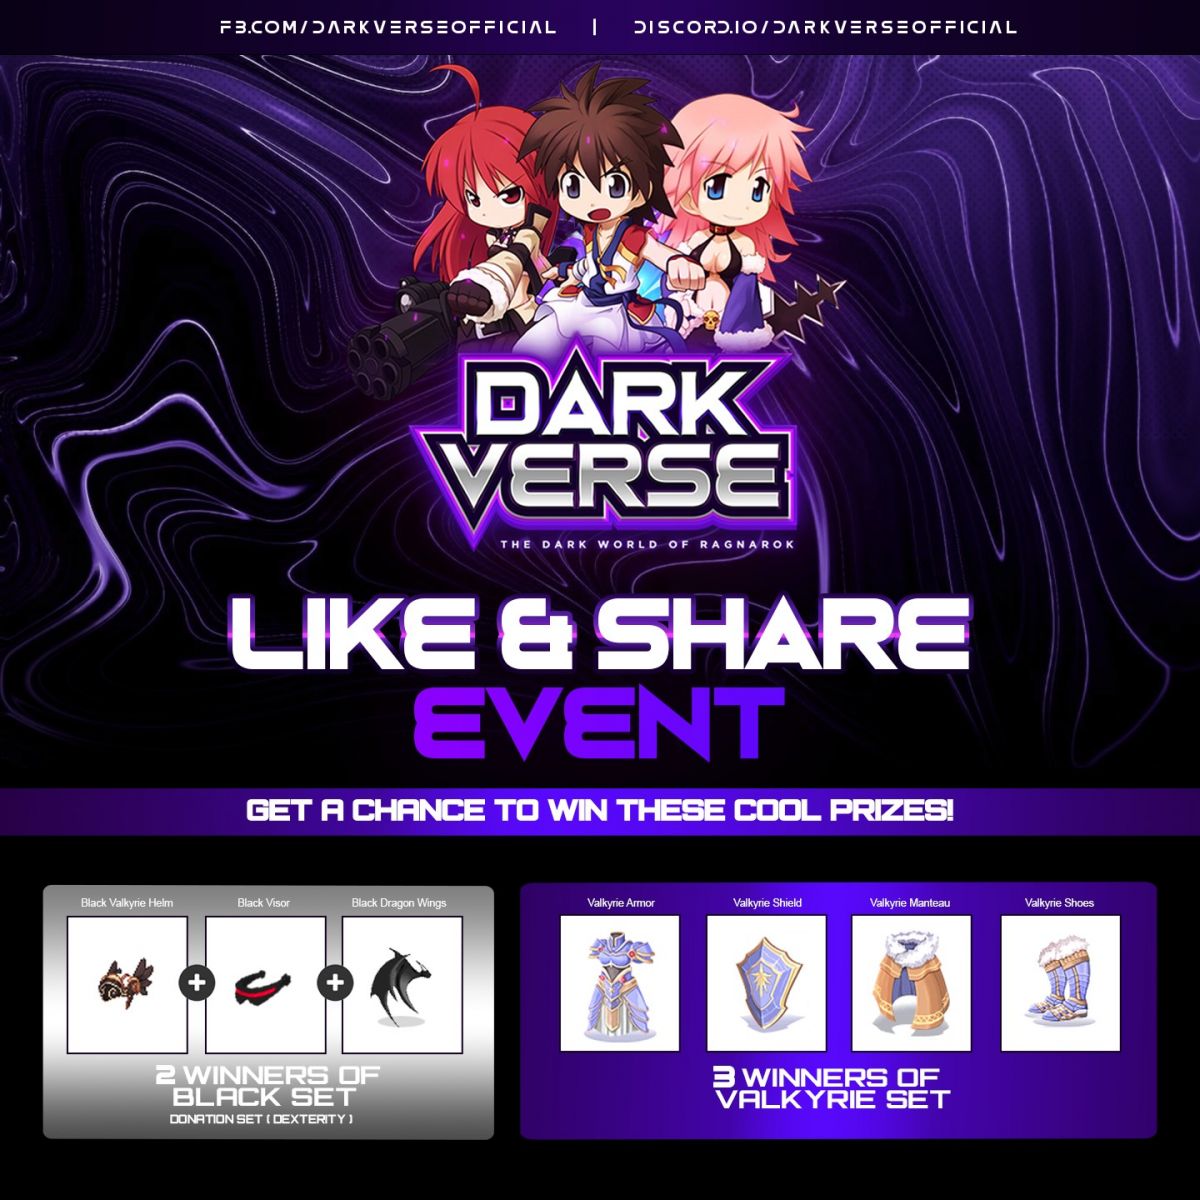 Darkverse Ragnarok Event like share